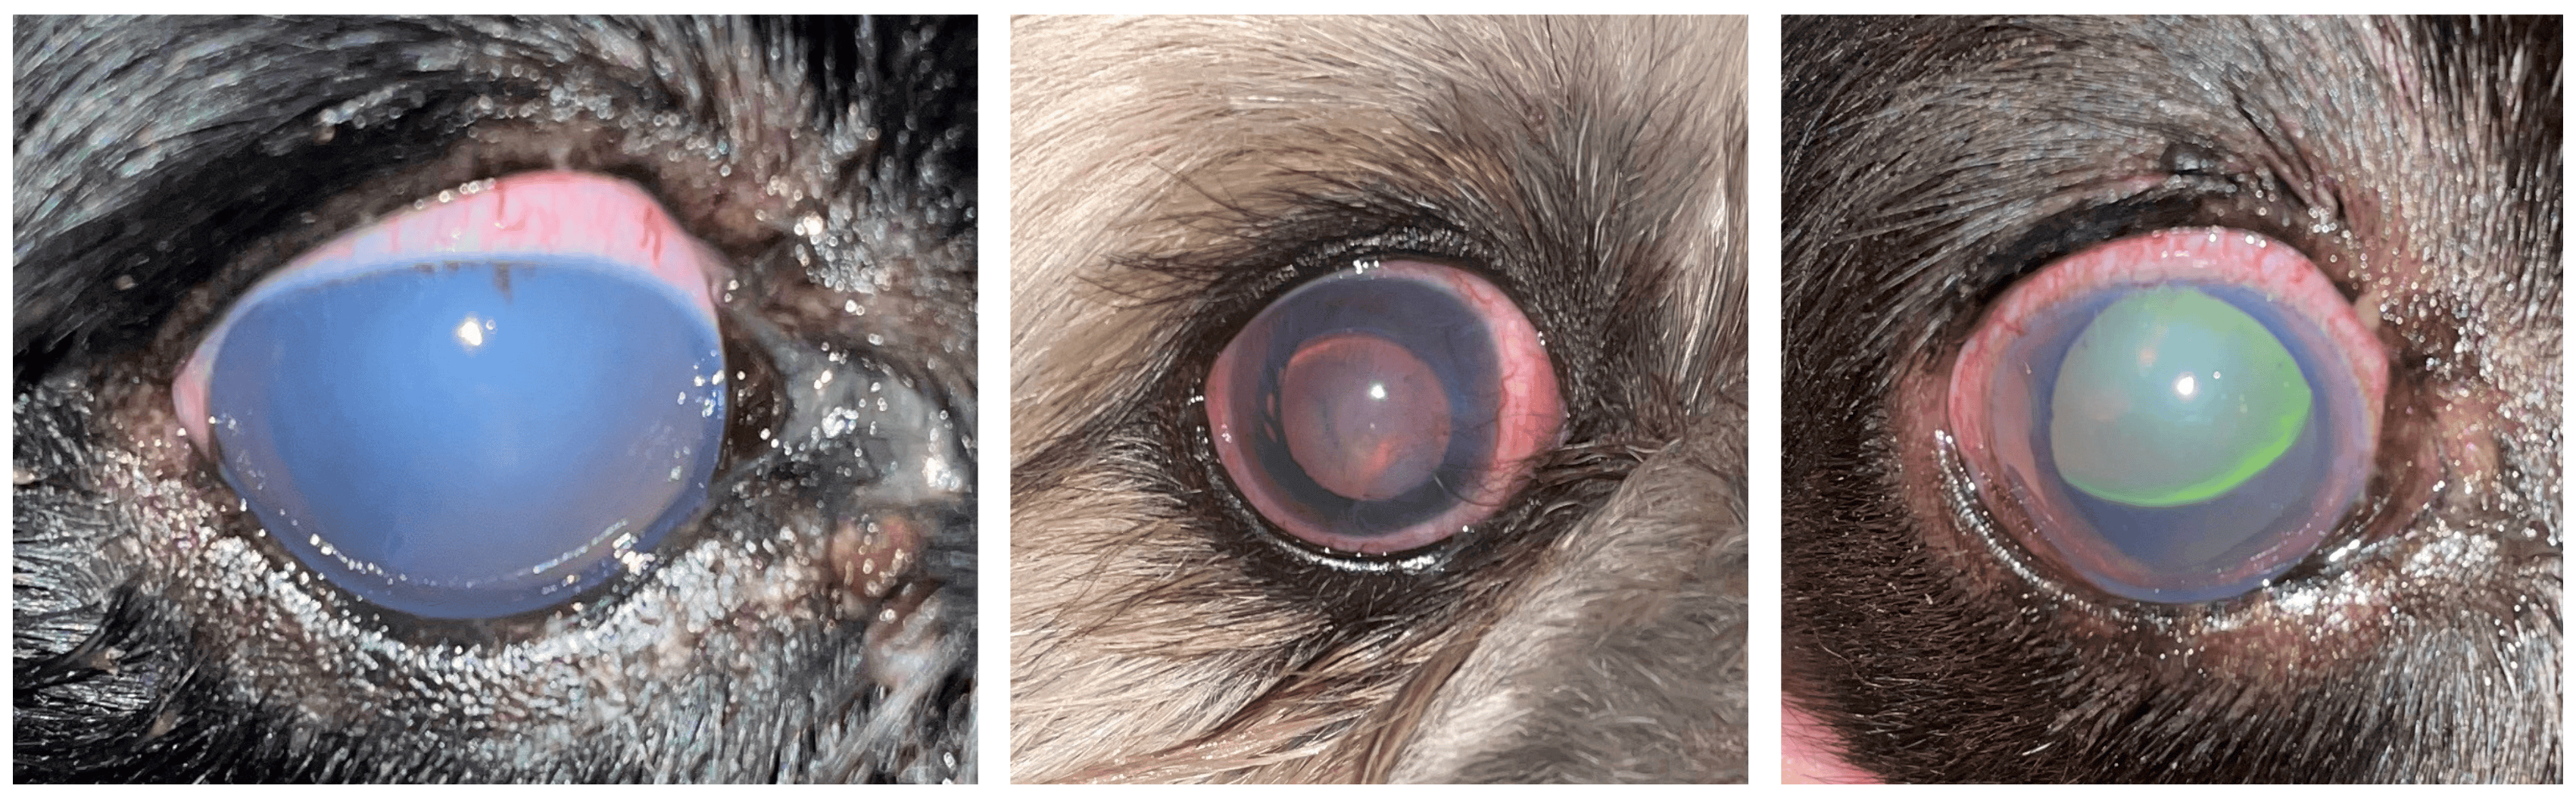 Glaucoom bij de hond